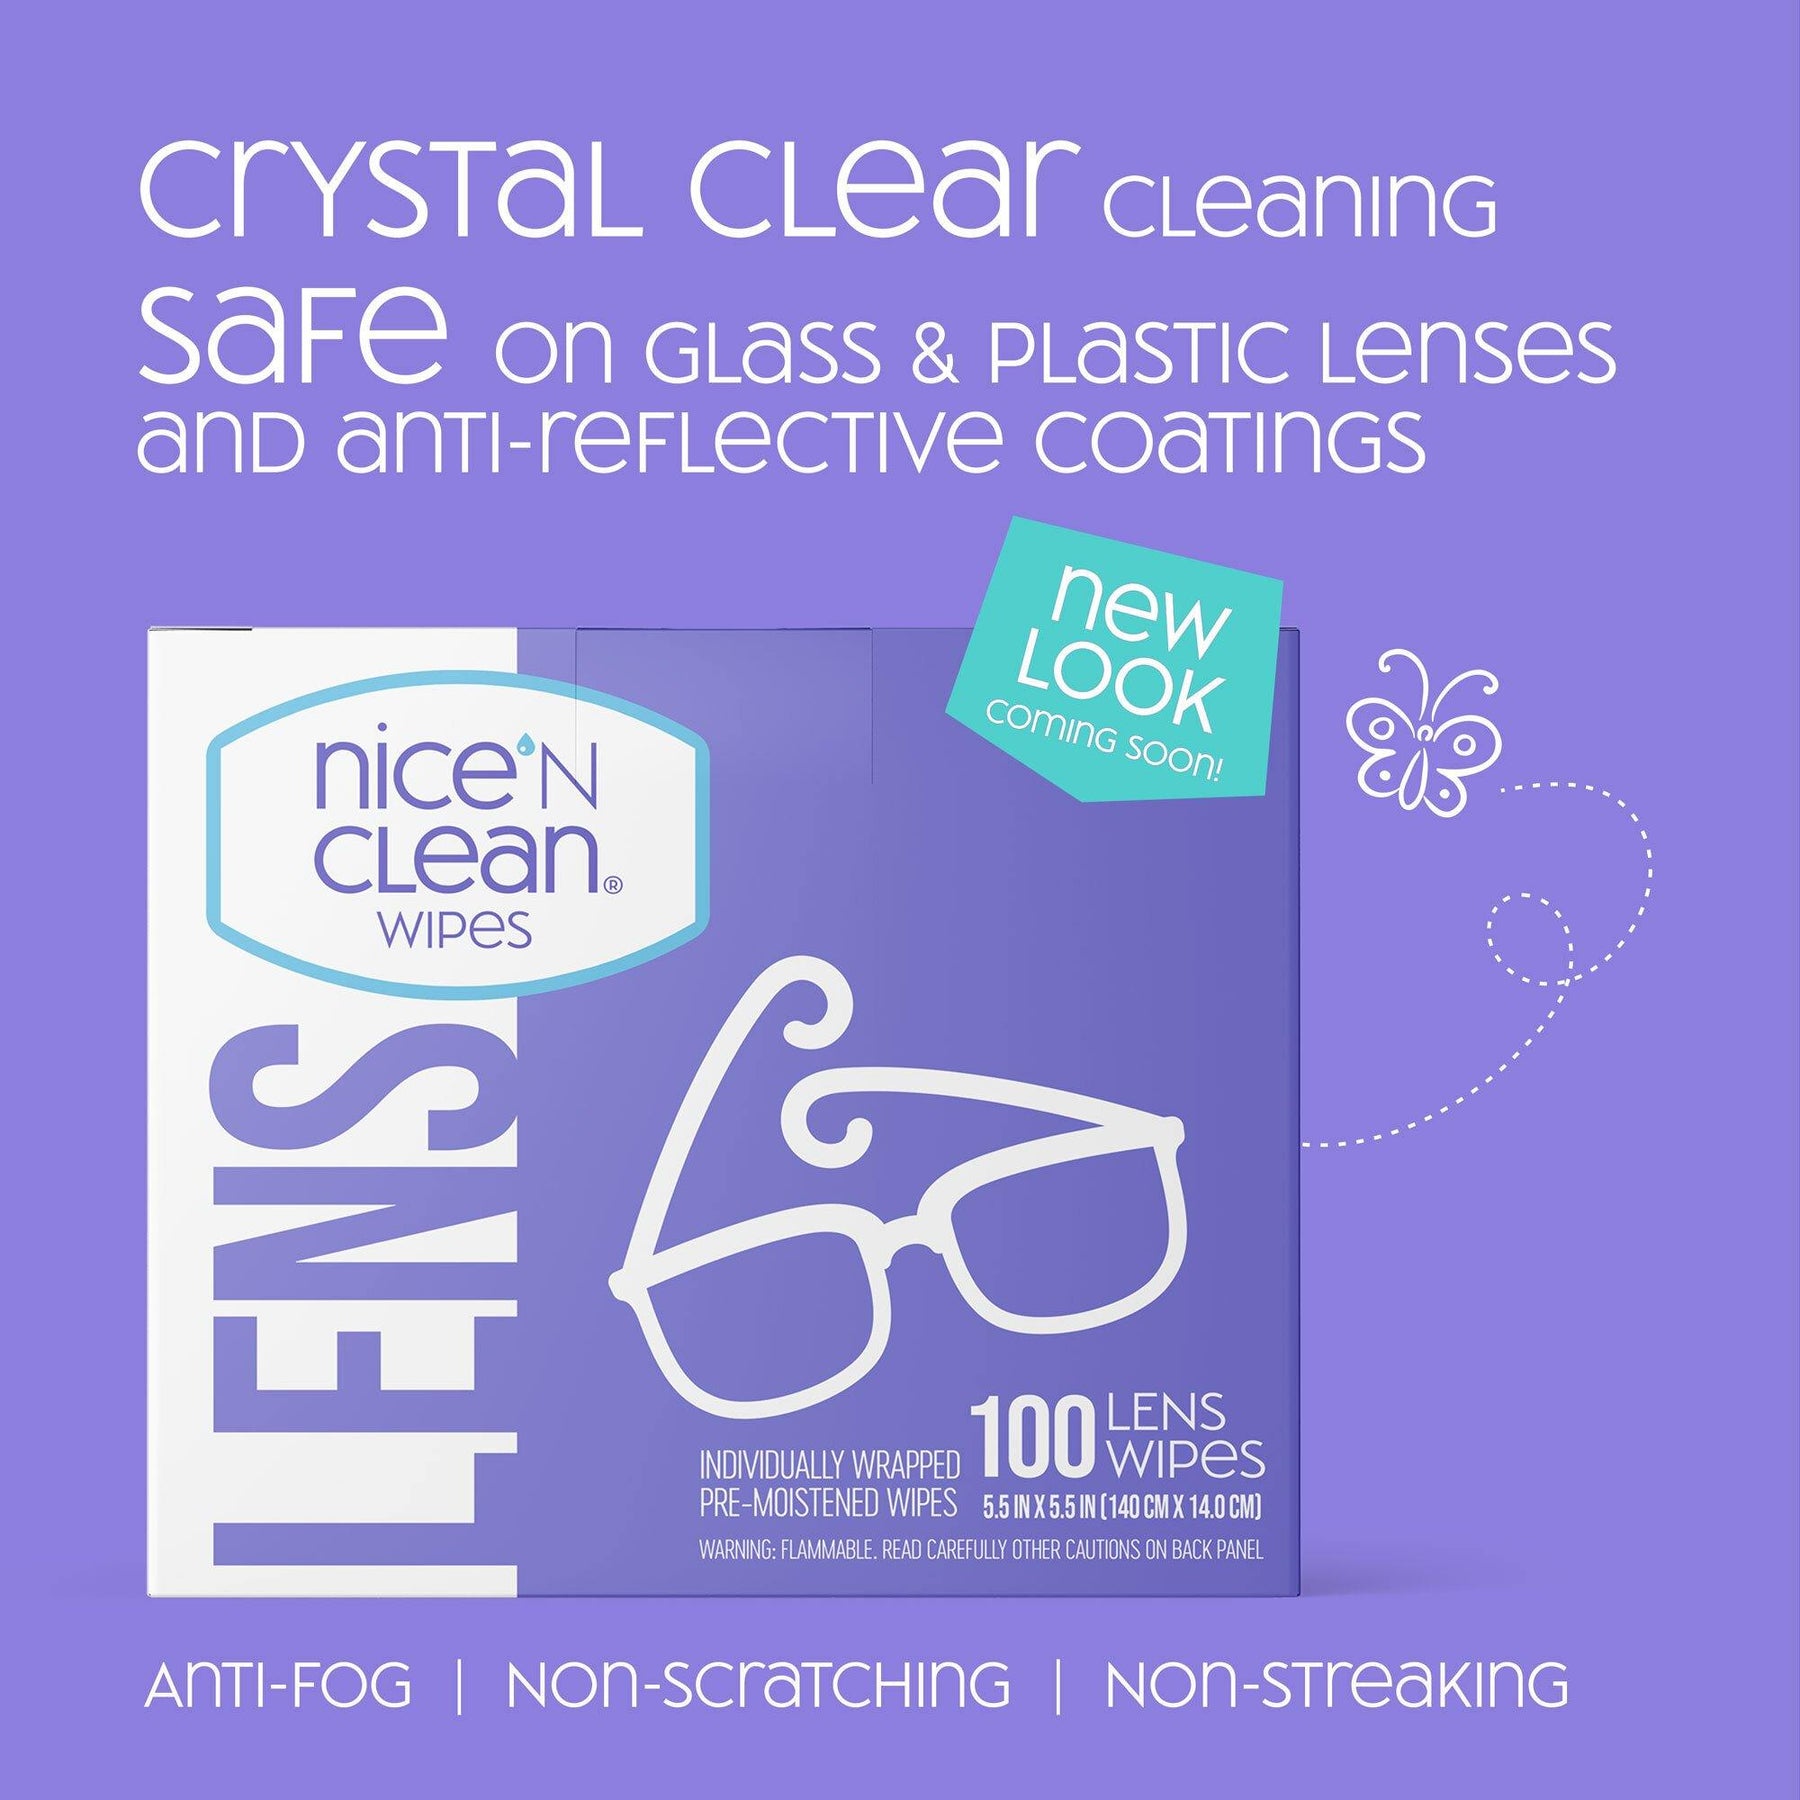 Metene Lens Wipes, Pre-Moistened Eye Glass Cleaner Wipes, 100 Count 